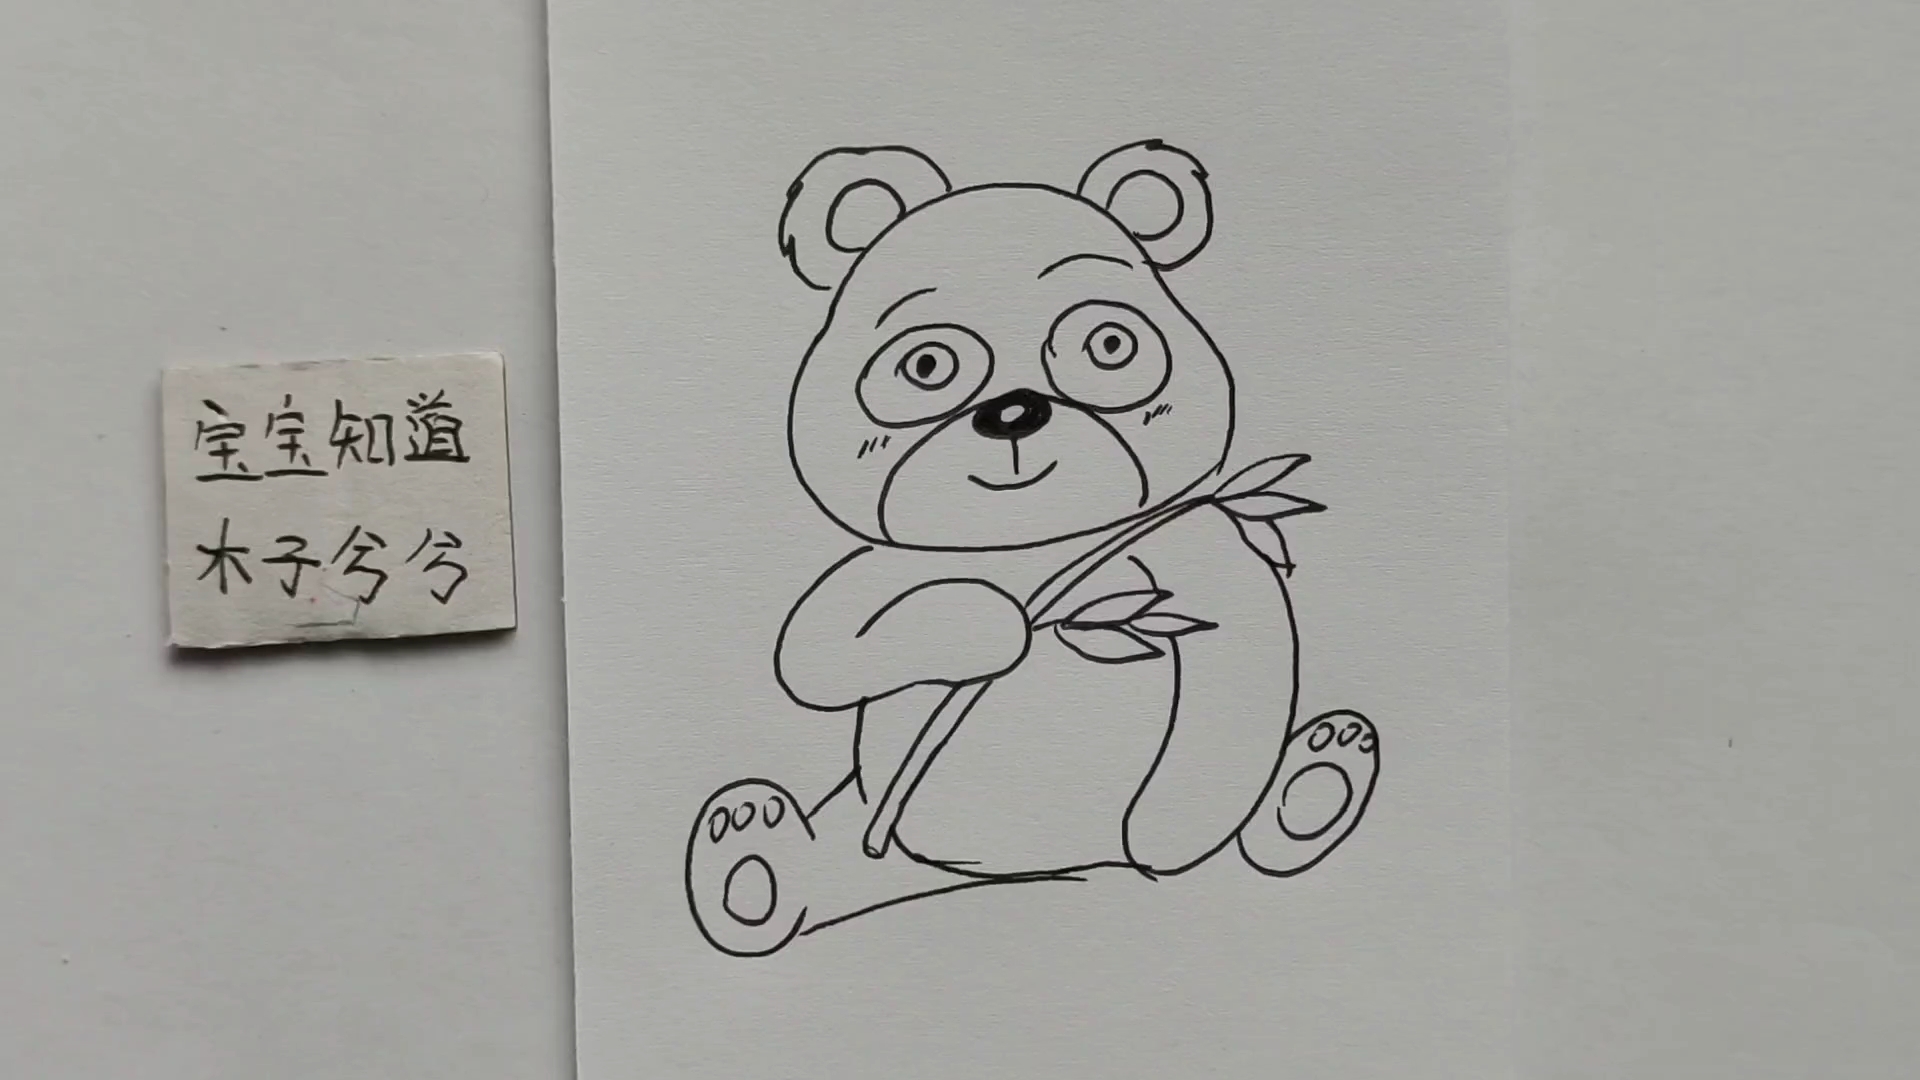 精 简笔画 拿着竹子坐在地上的小熊猫